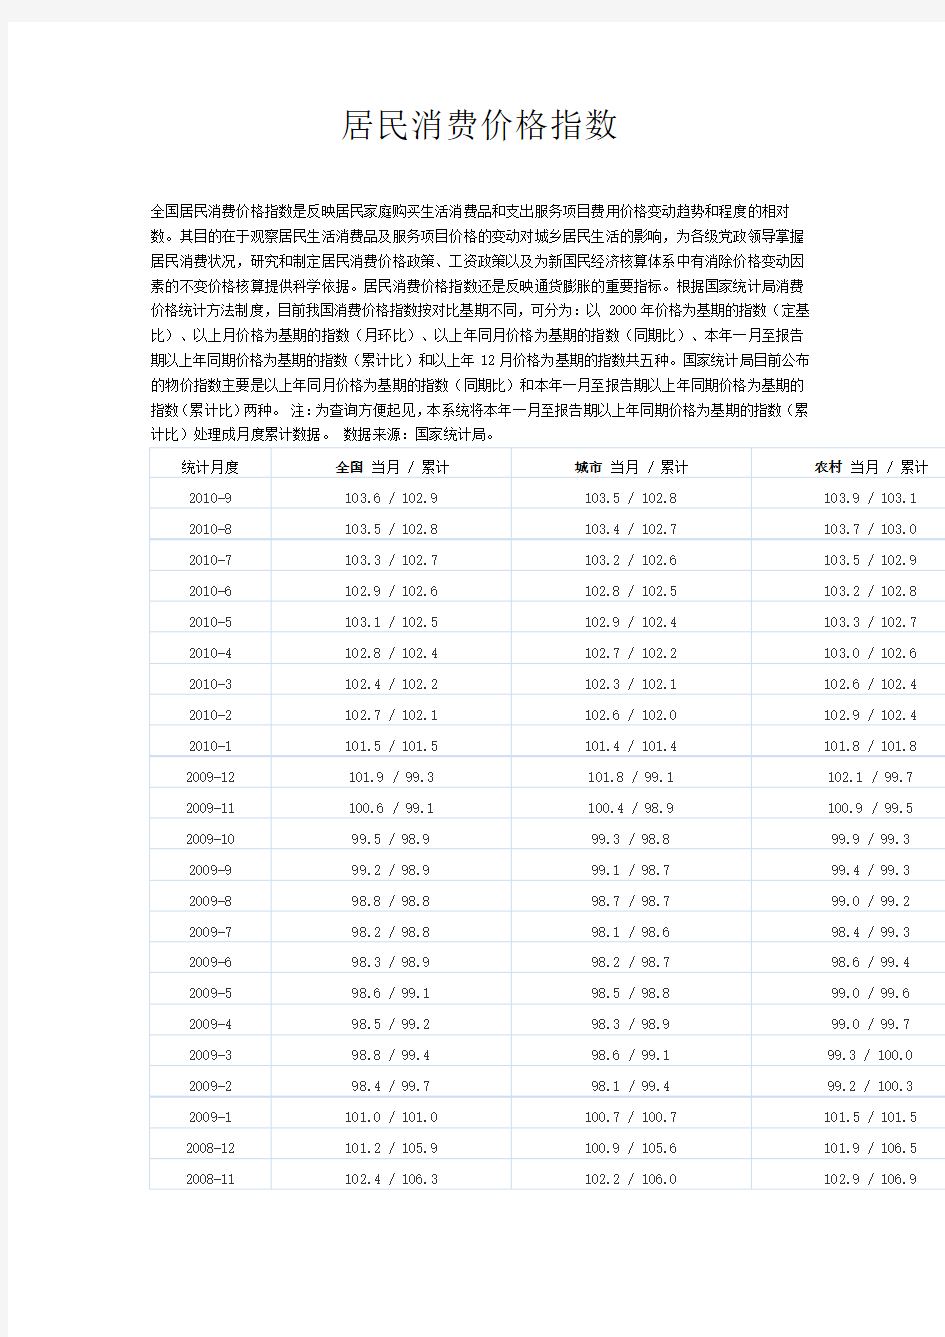 中国居民消费价格指数月度数据